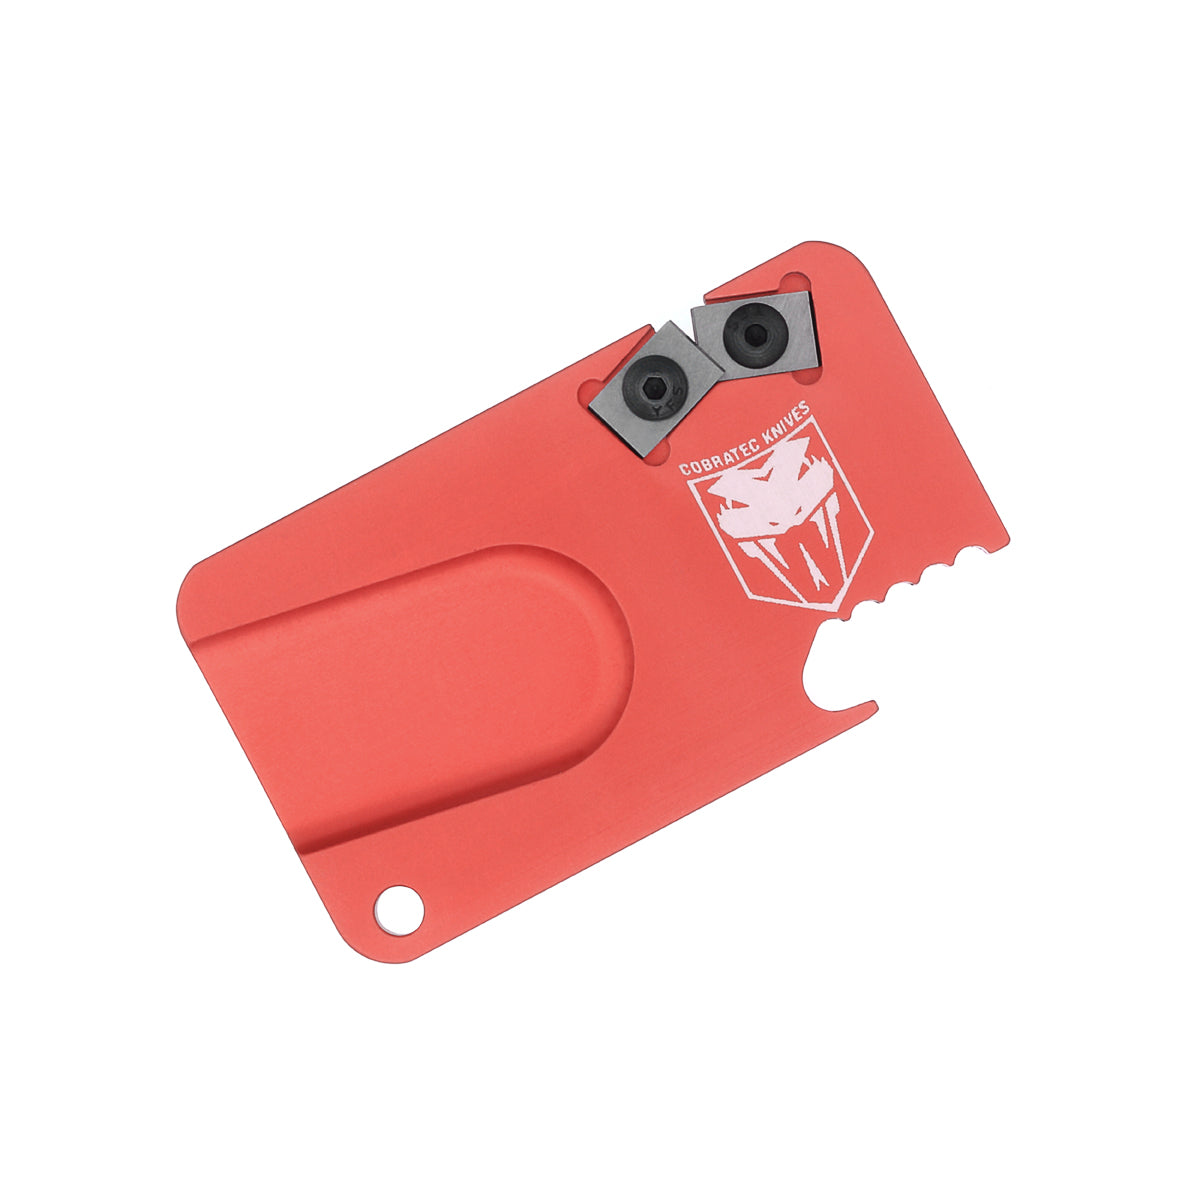 Buy Camco 51029 Red Standard Knife Sharpener